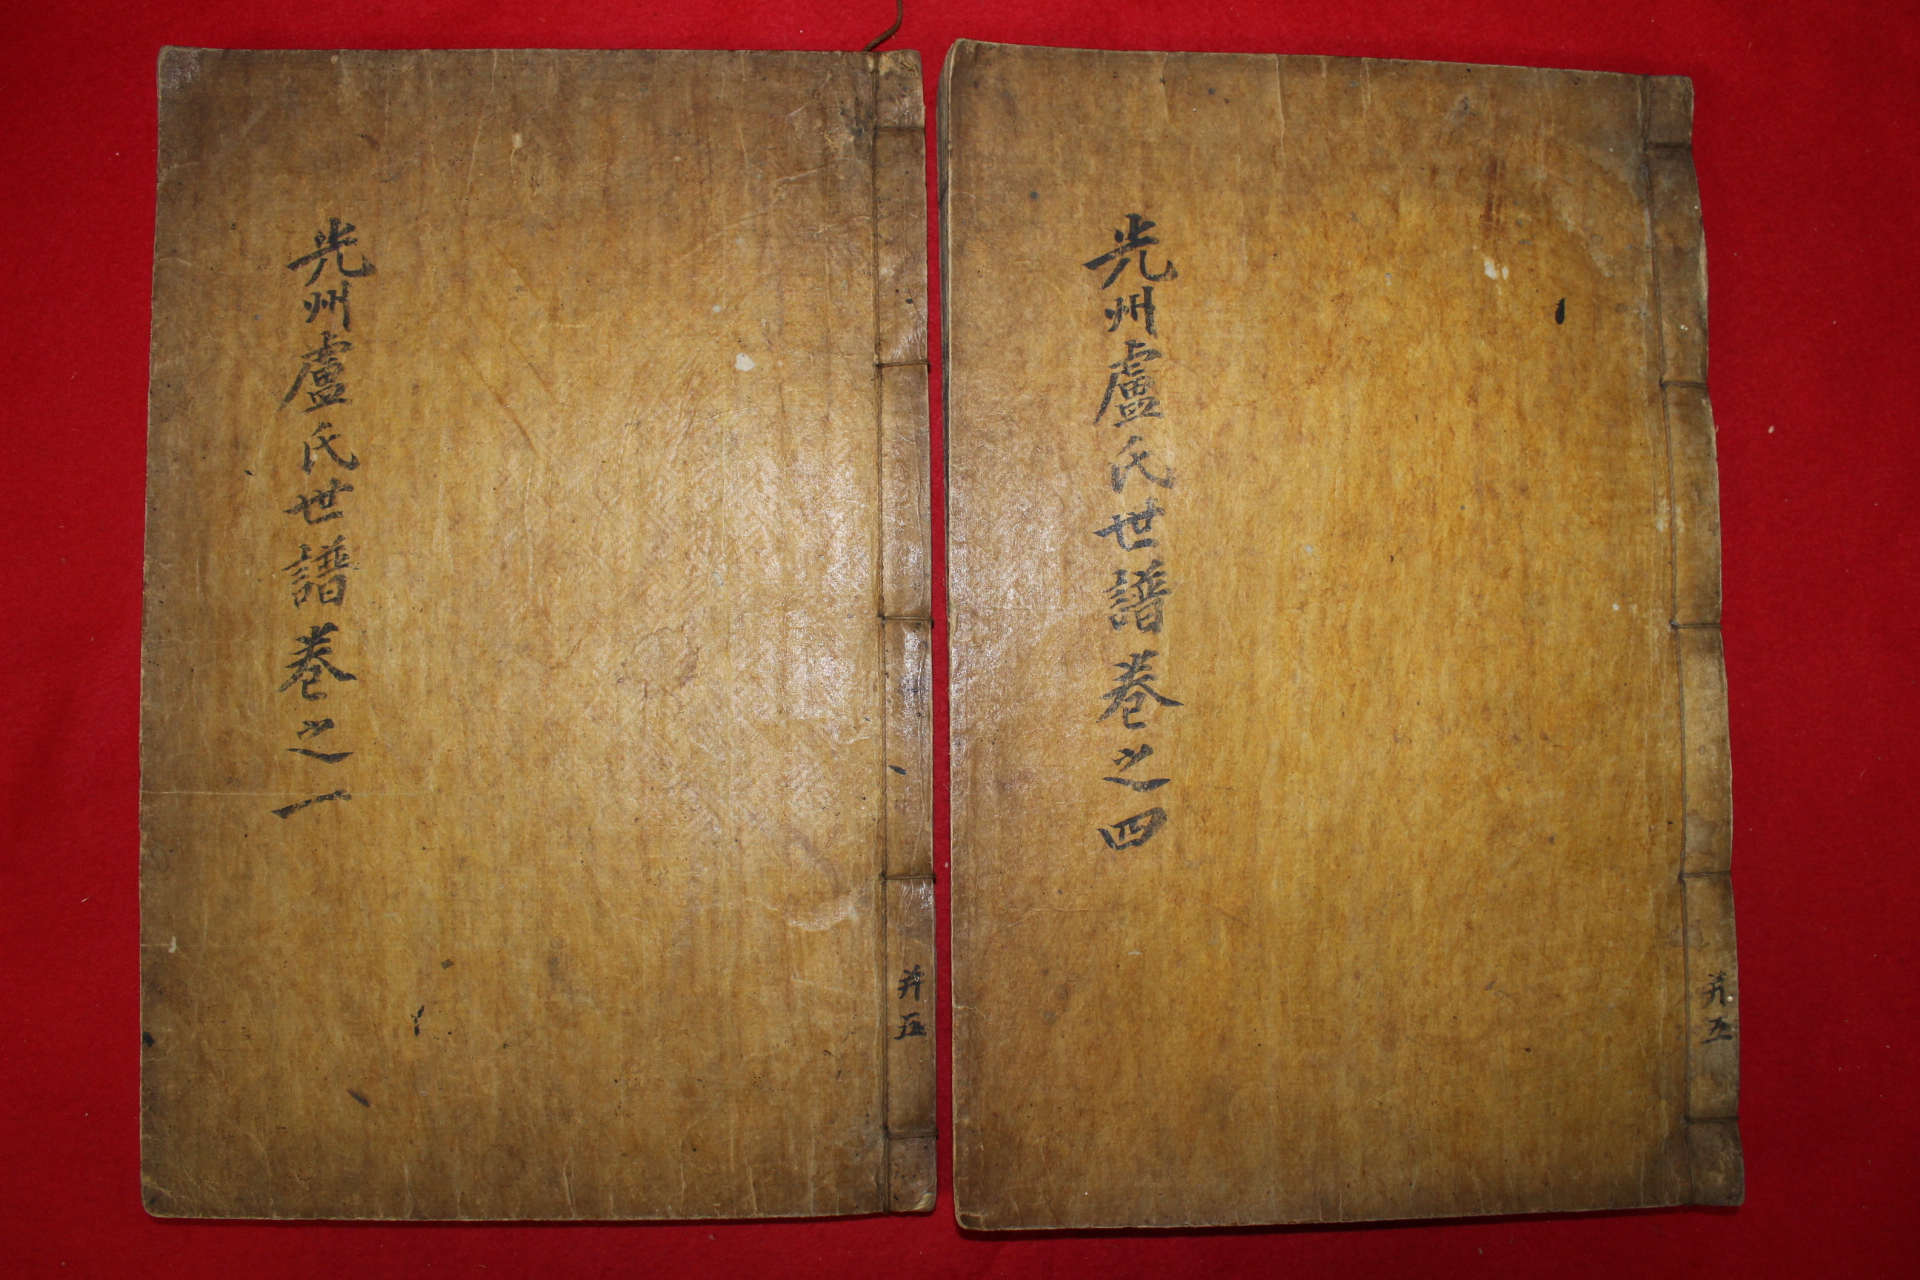 1870년 목활자본 광주노씨세보(光州盧氏世譜) 2책